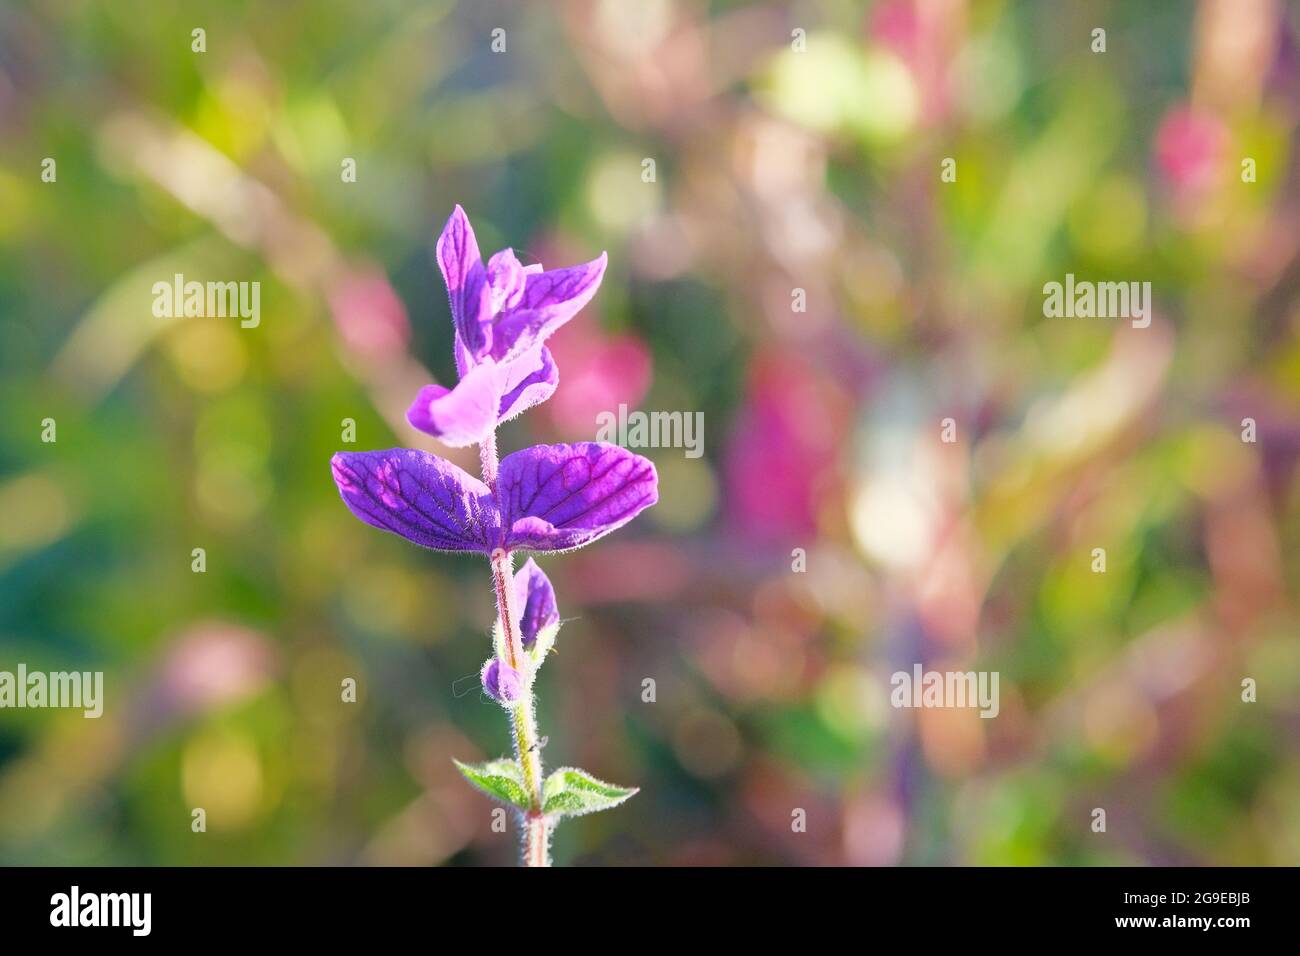 Lila Blume in Blüte auf unscharfem hellen Hintergrund. Sonnenblendung auf Blütenblättern aus violetten Blüten im Frühling. Speicherplatz kopieren. Stockfoto